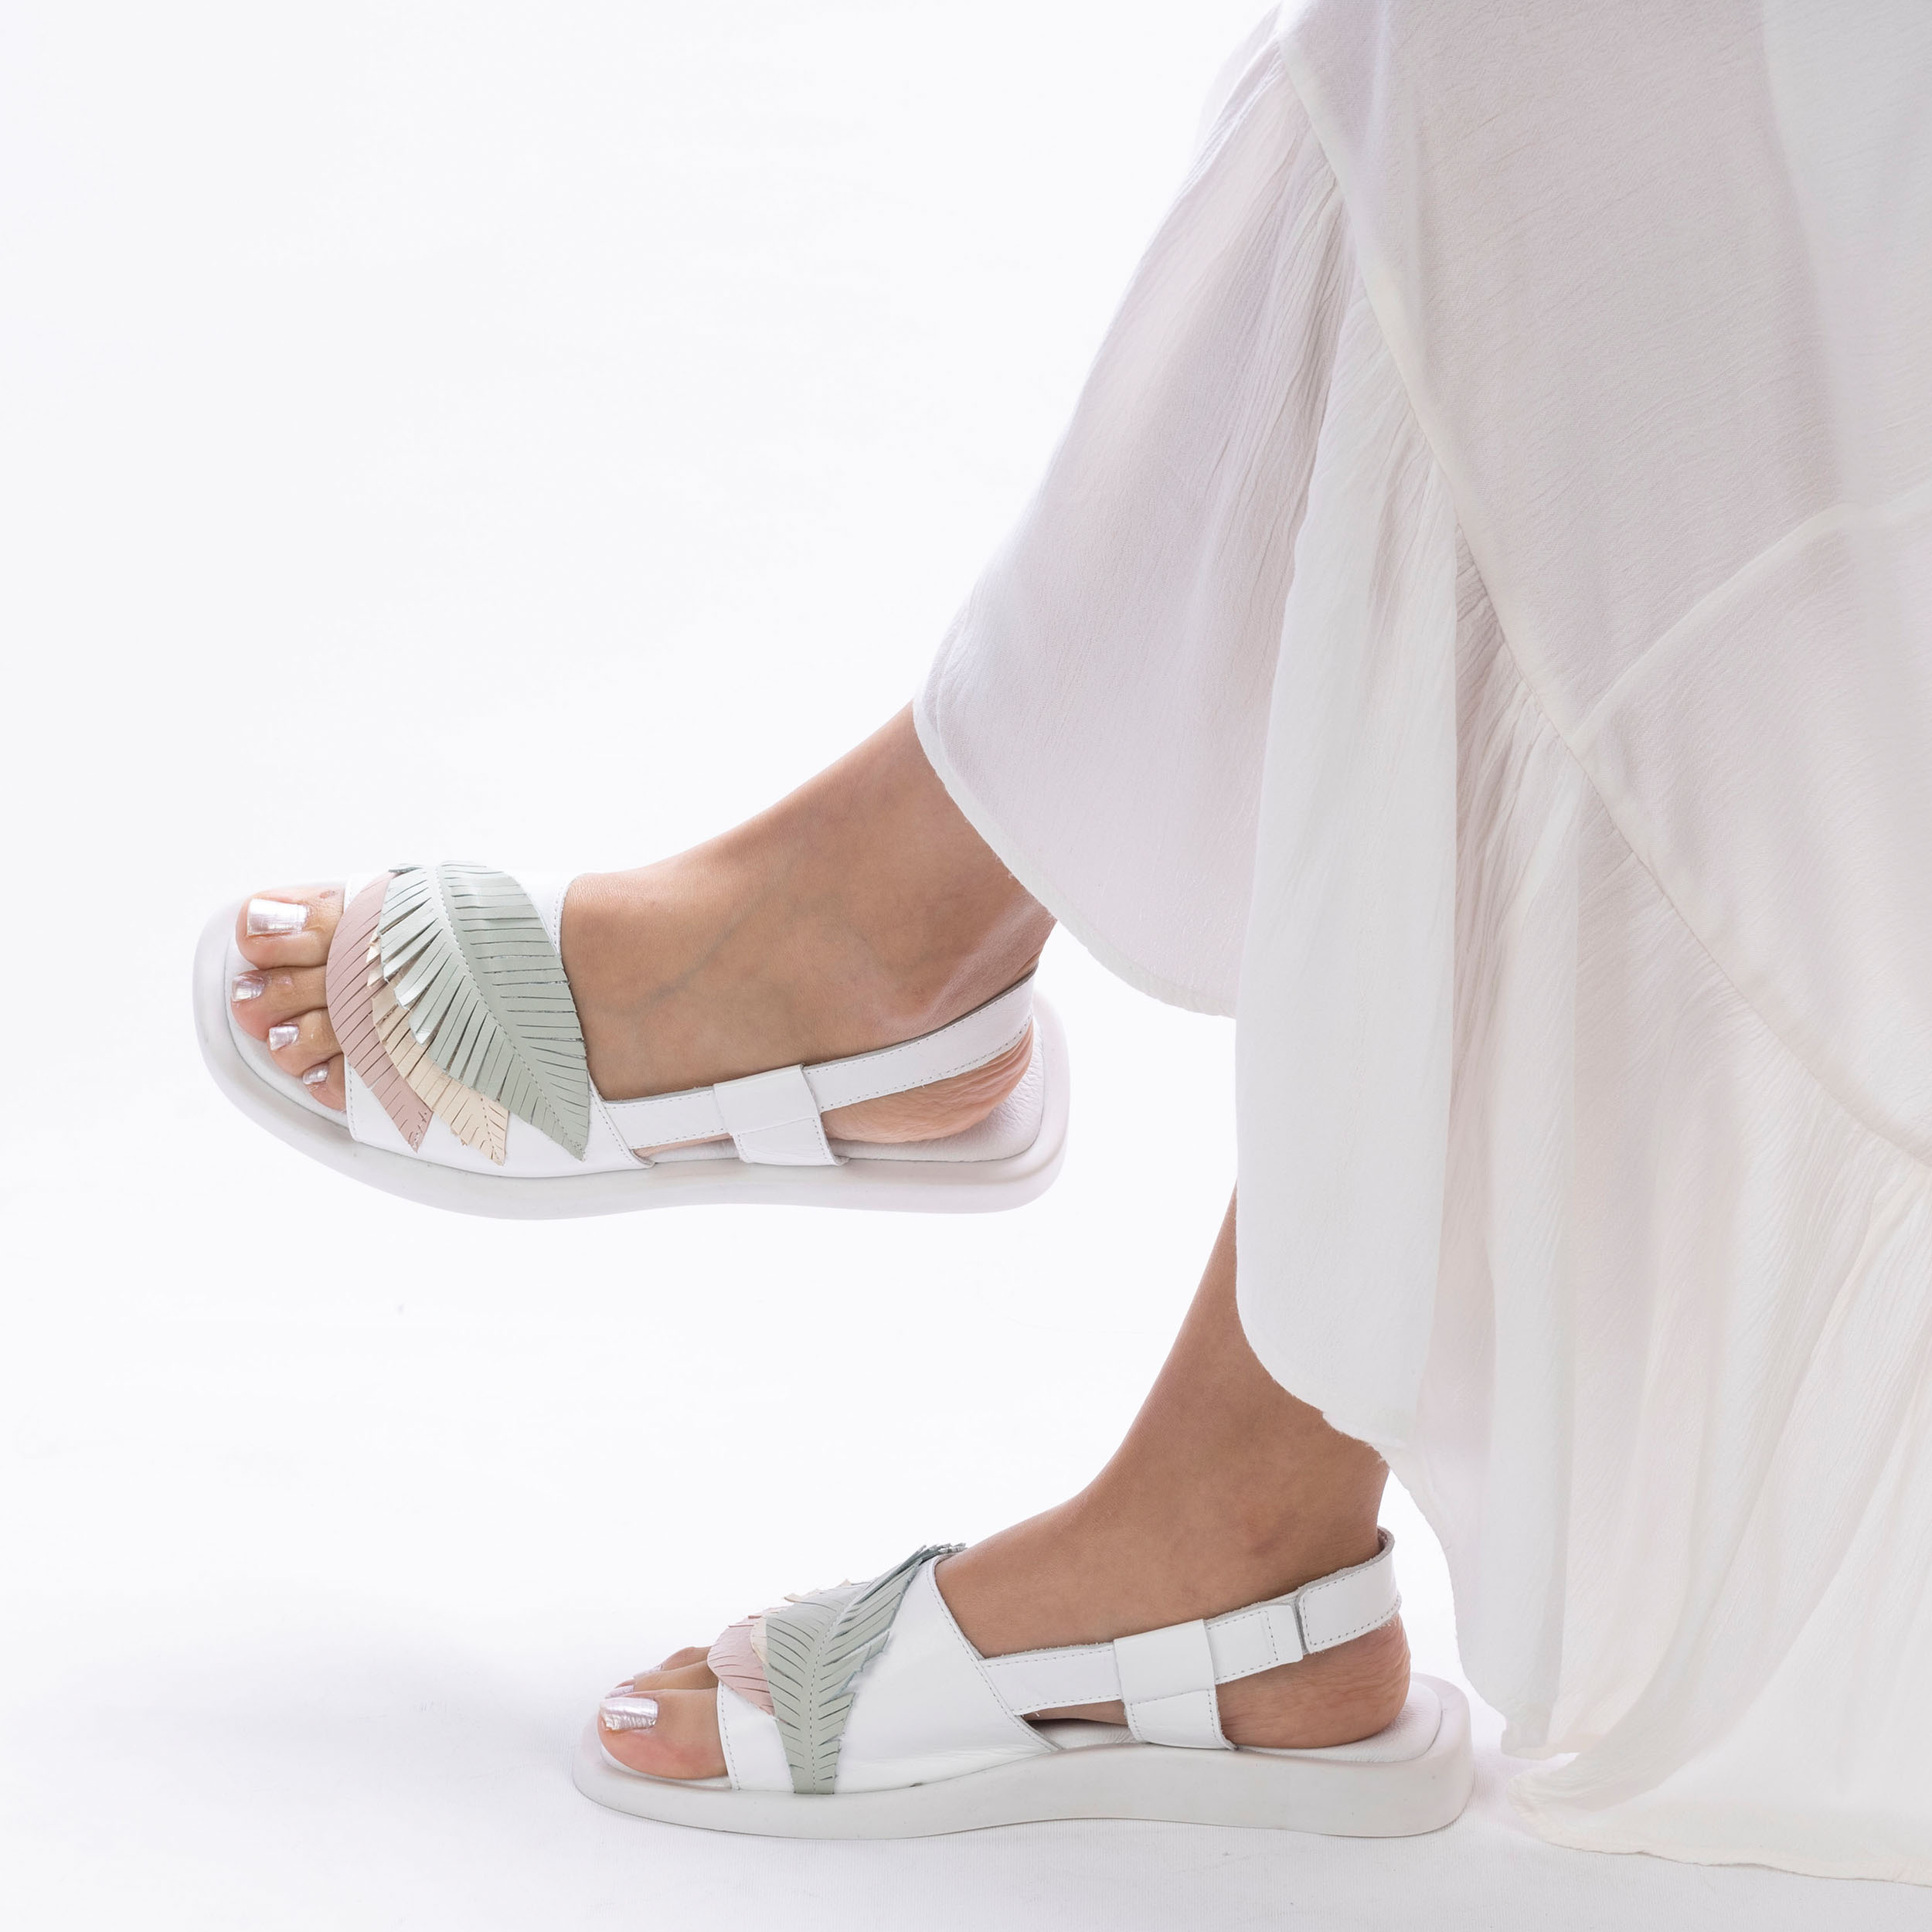 TwoEgoist Kadın Hakiki Deri Günlük Rahat Tasarım Sandalet, Renk: Beyaz, Beden: 37